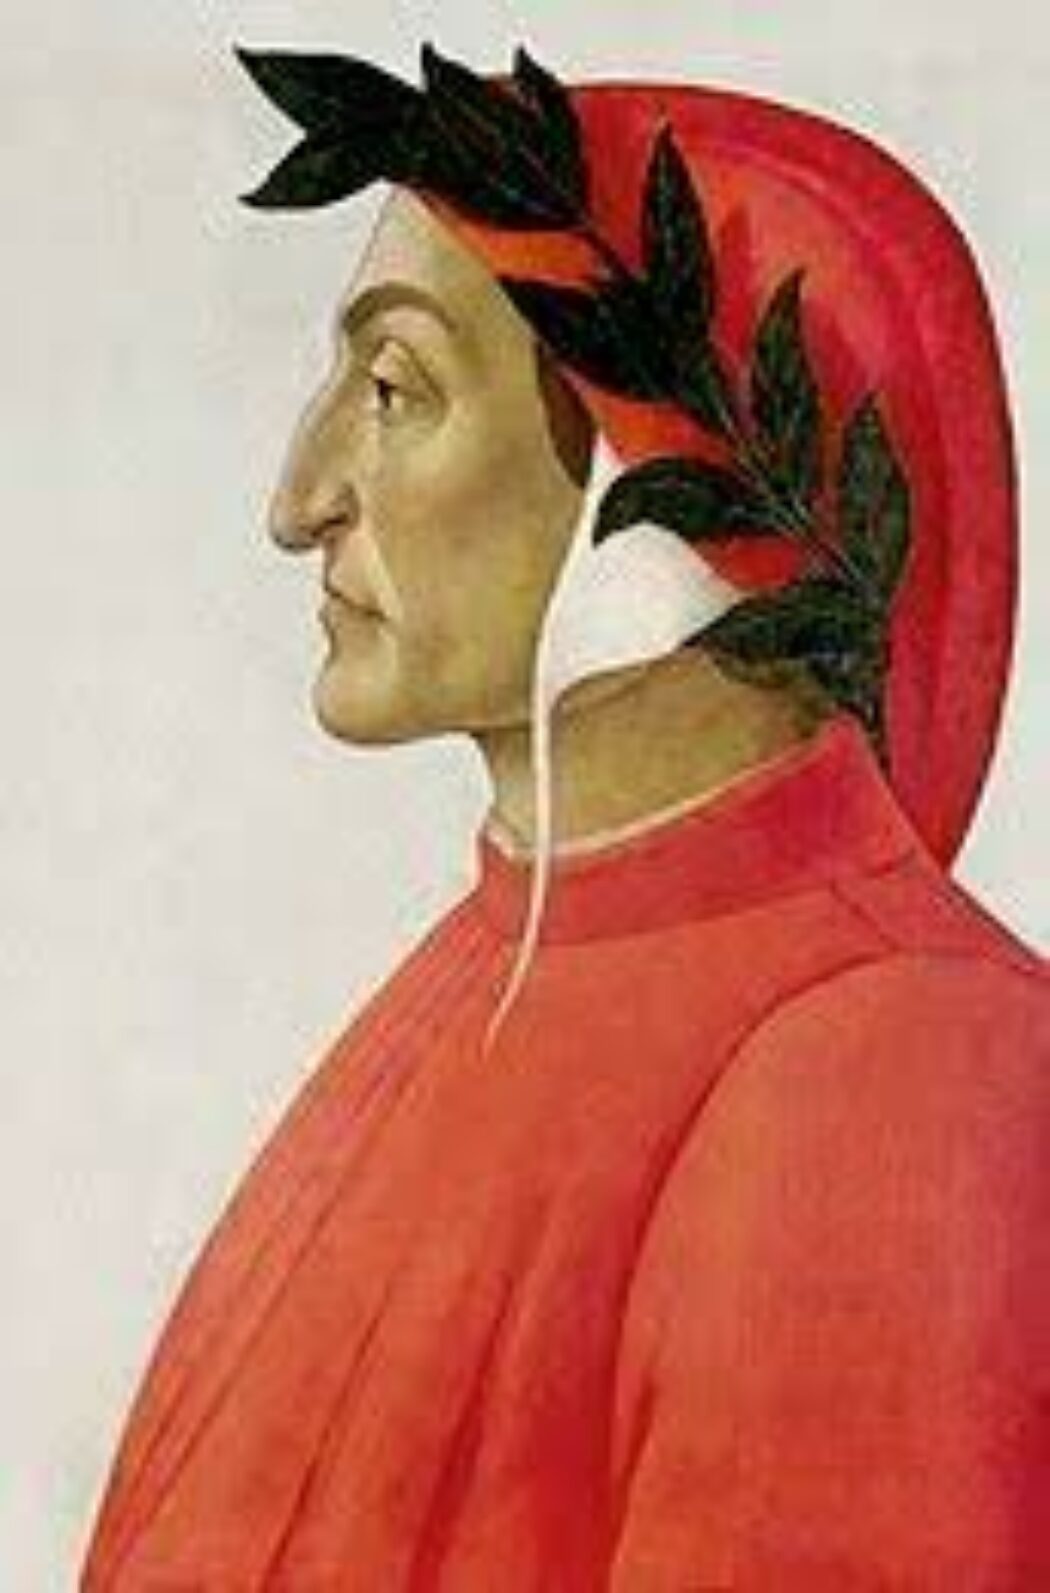 Dante père de la pensée de droite ?